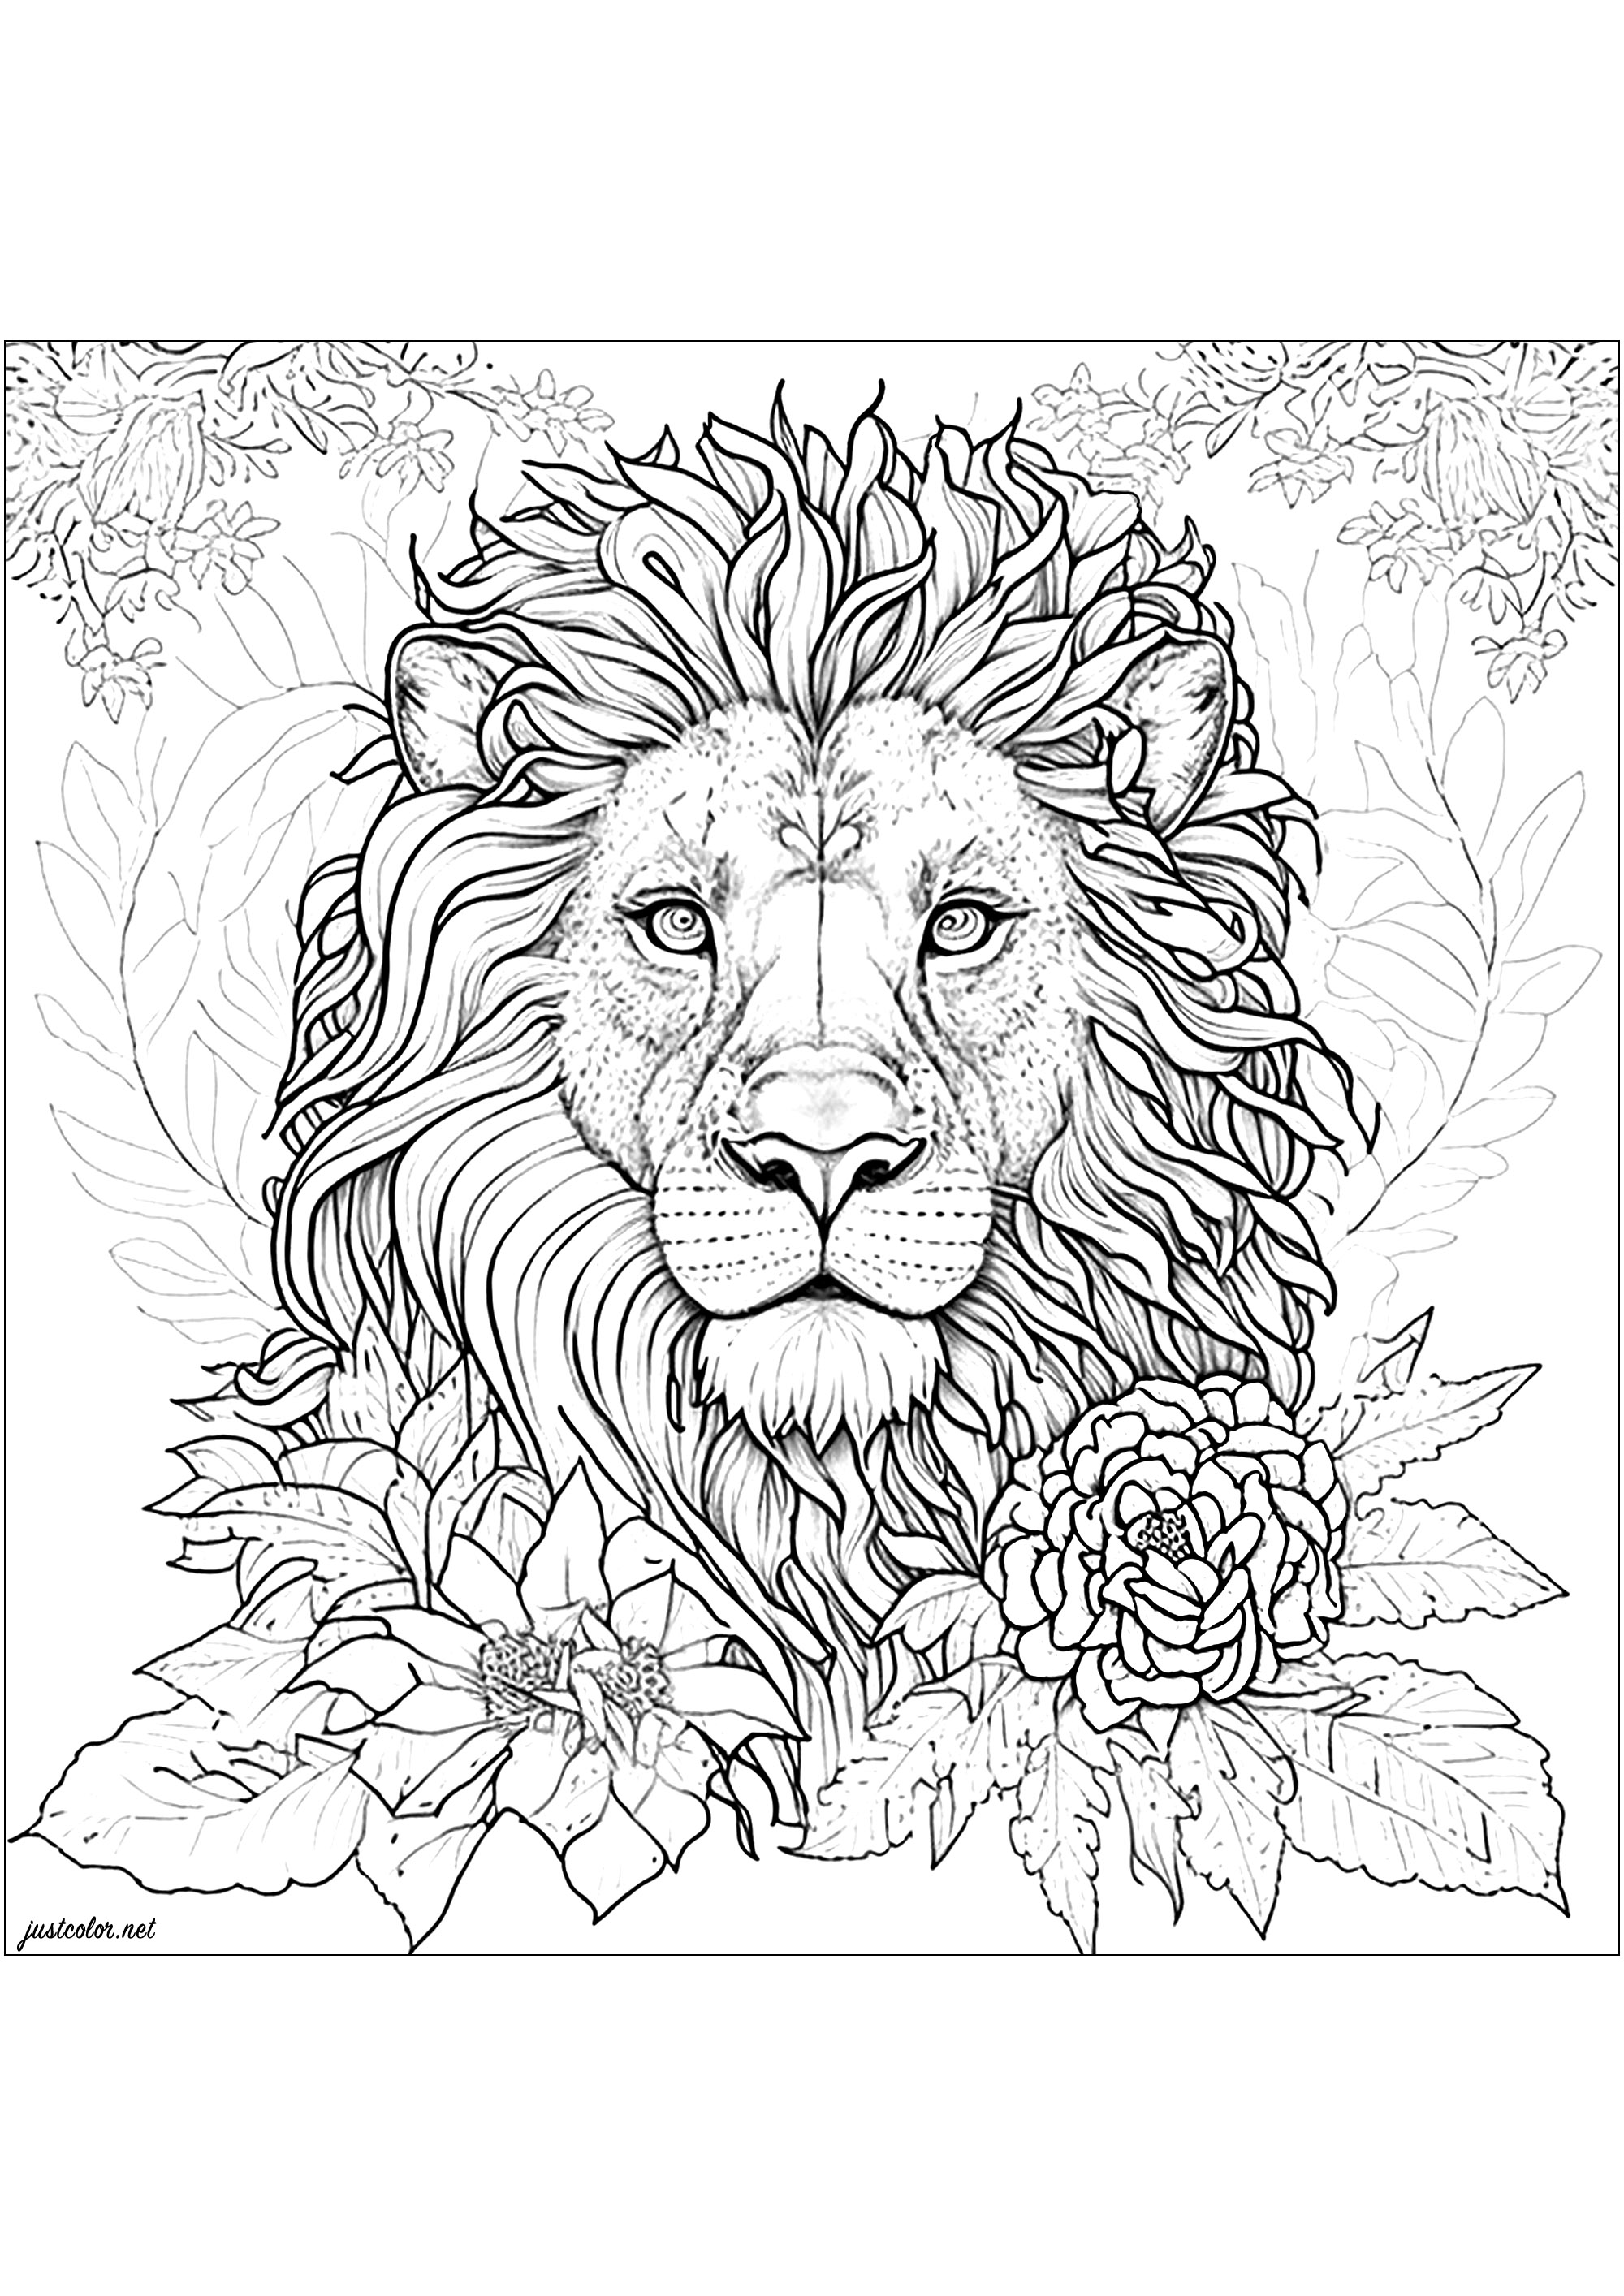 Coloriage d'un lion entouré de jolies fleurs. Ce dessin de lion est ultra réaliste et détaillé ! Prenez votre temps pour colorier chaque partie de sa belle crinière, et toute la végétation qui l'entoure.